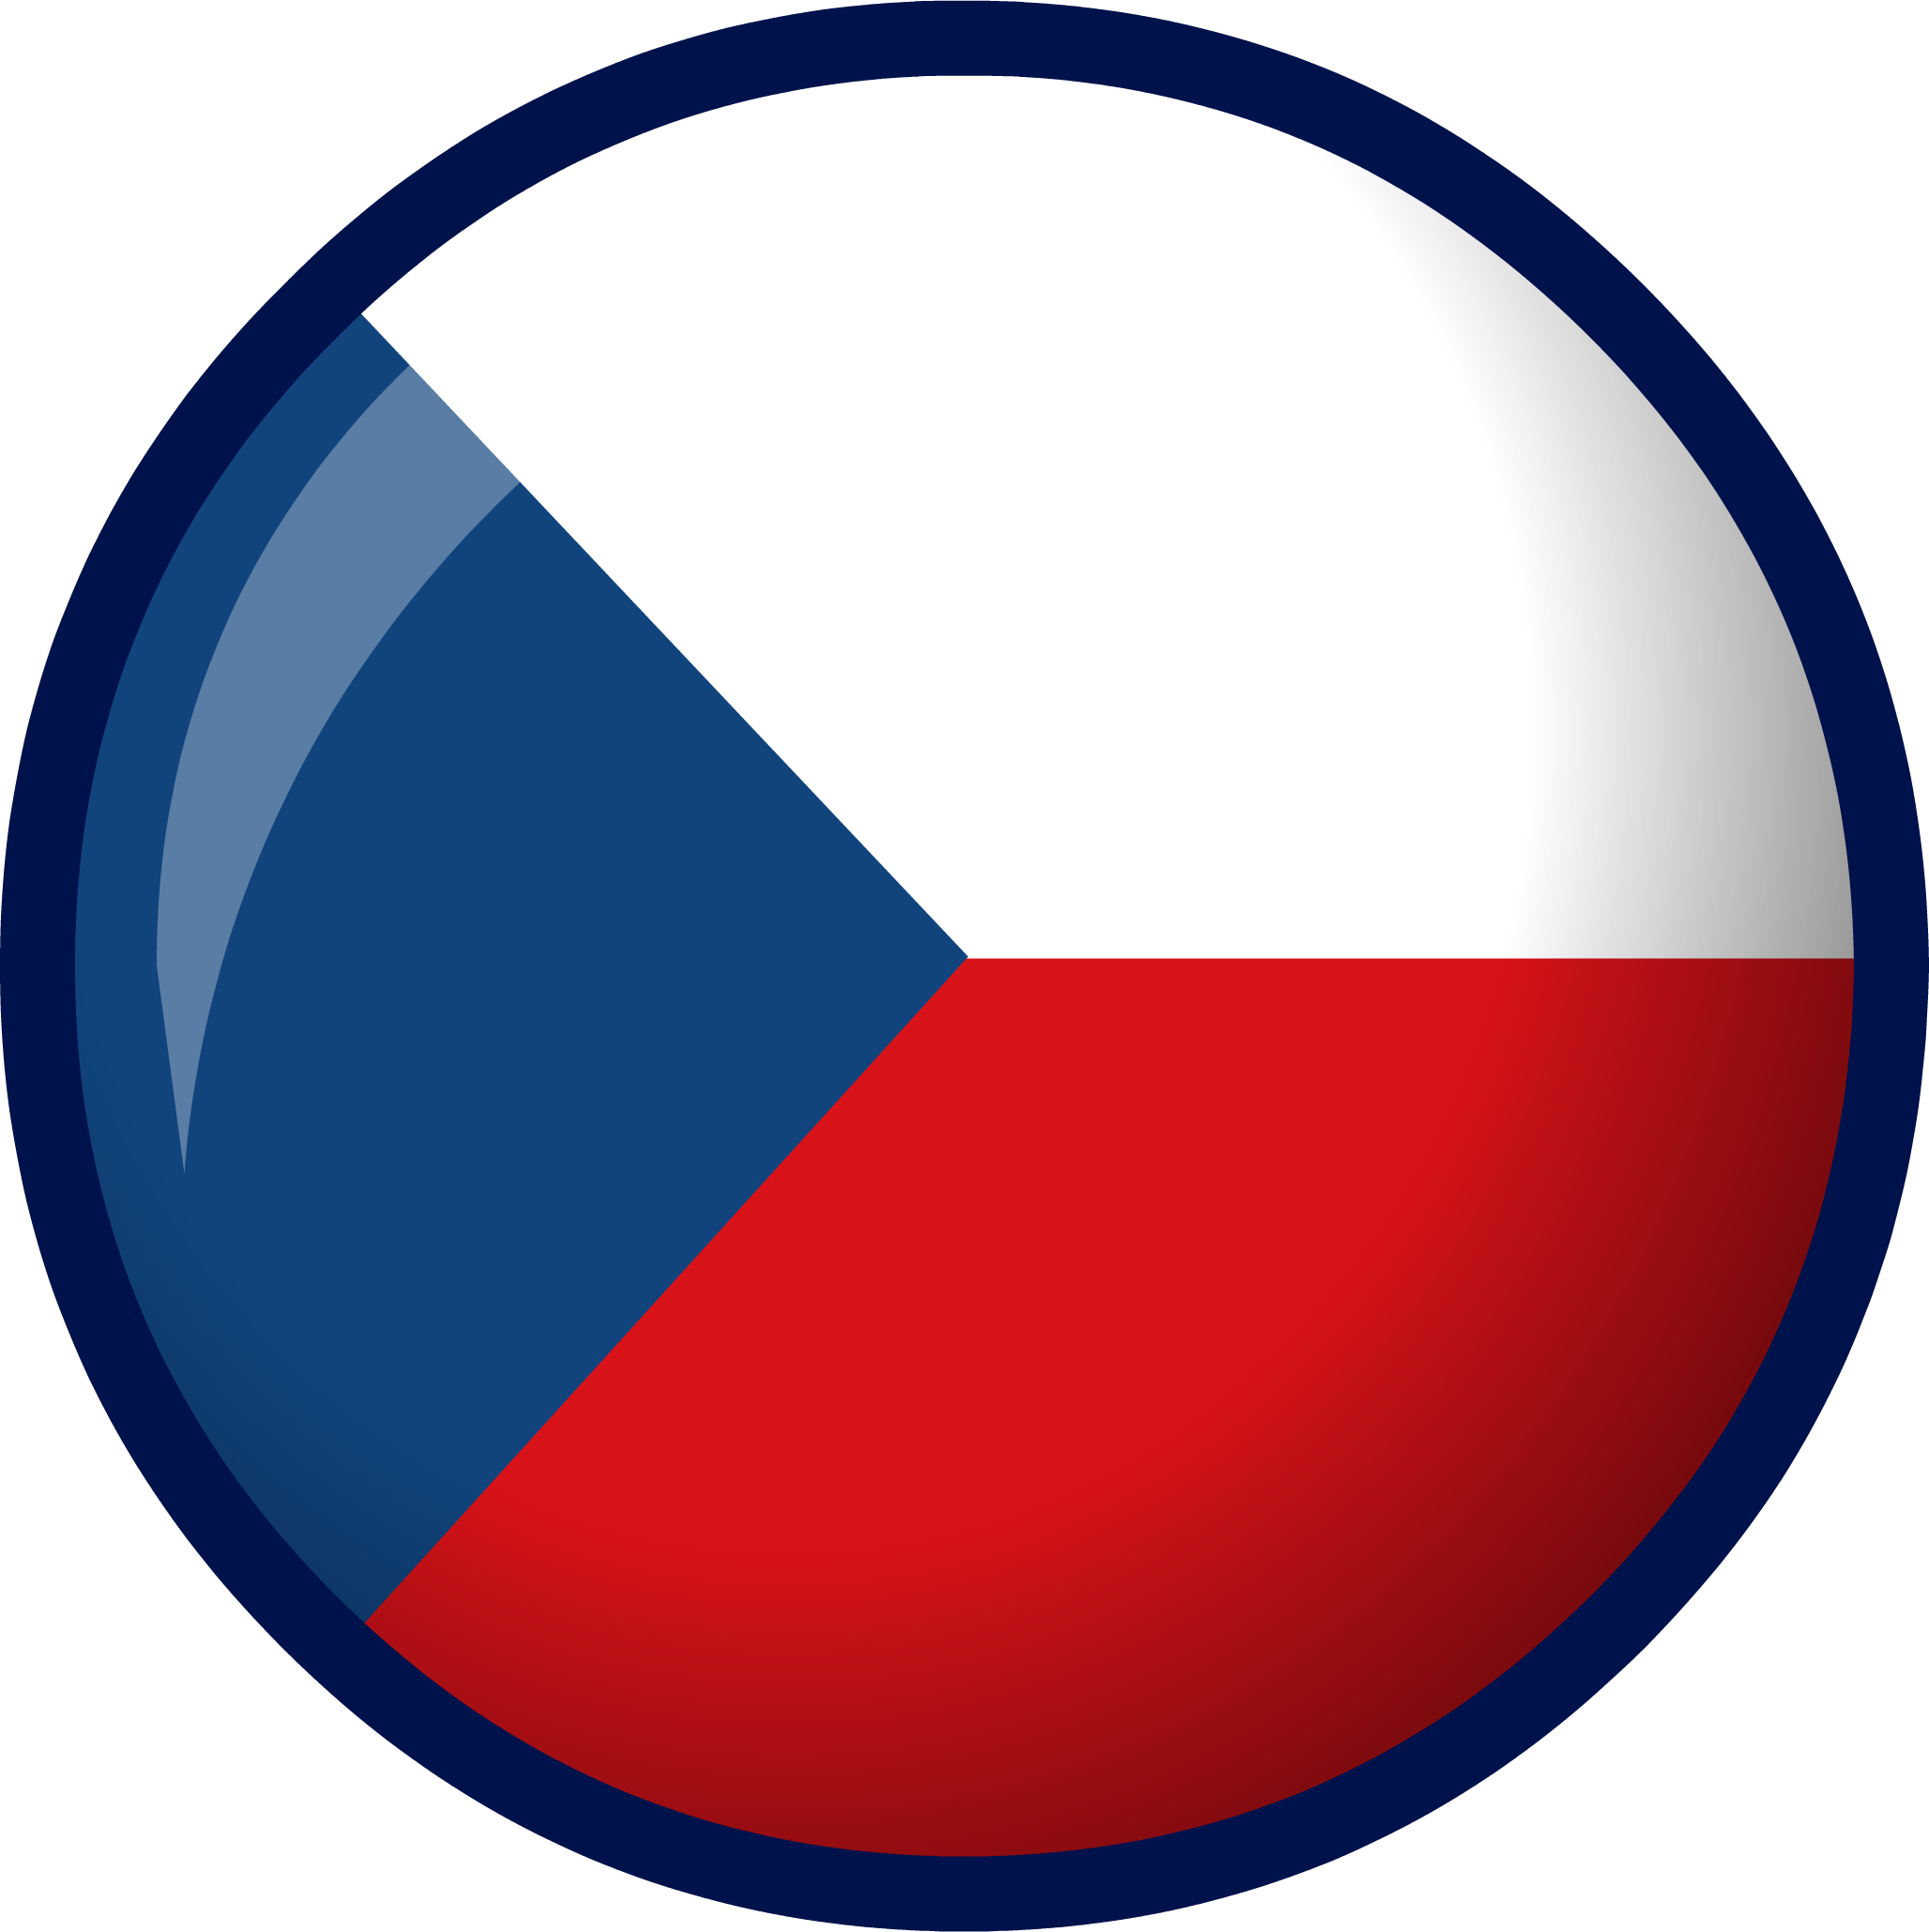 Czech Republic flag | Club Penguin Wiki | FANDOM powered by Wikia